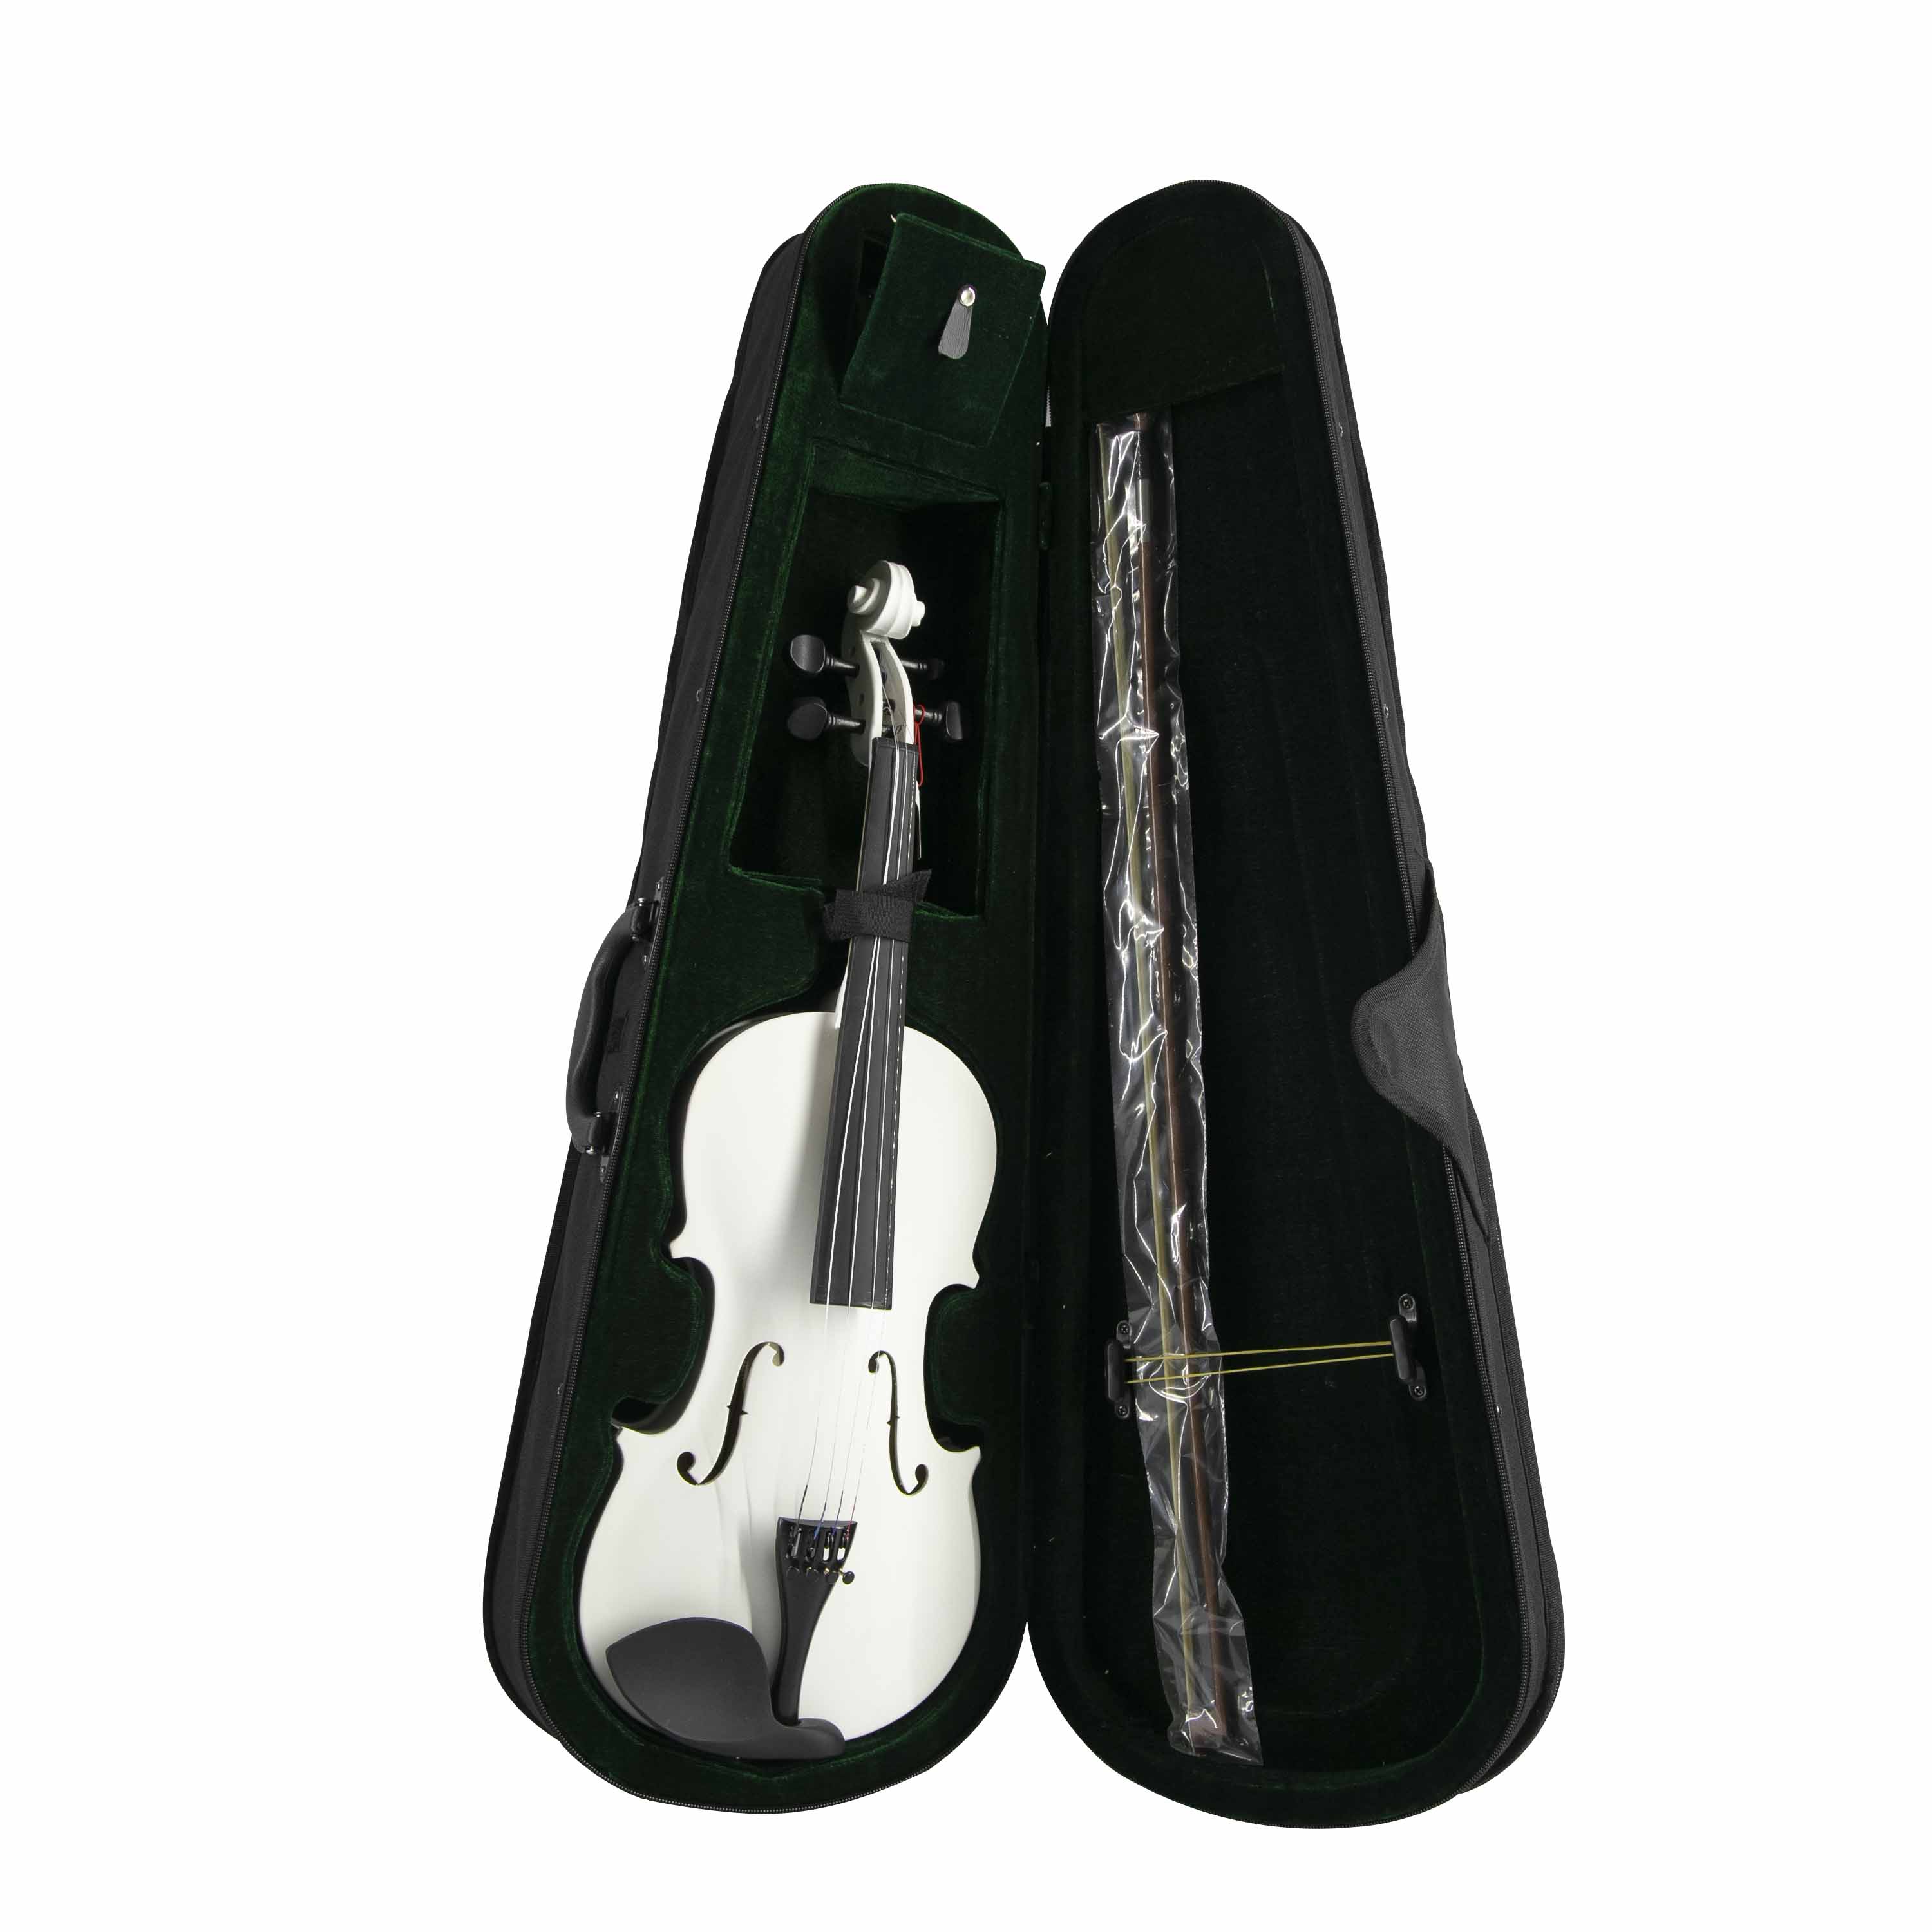 Violin Andolini Blanco Estuche Y Arco Aviow44